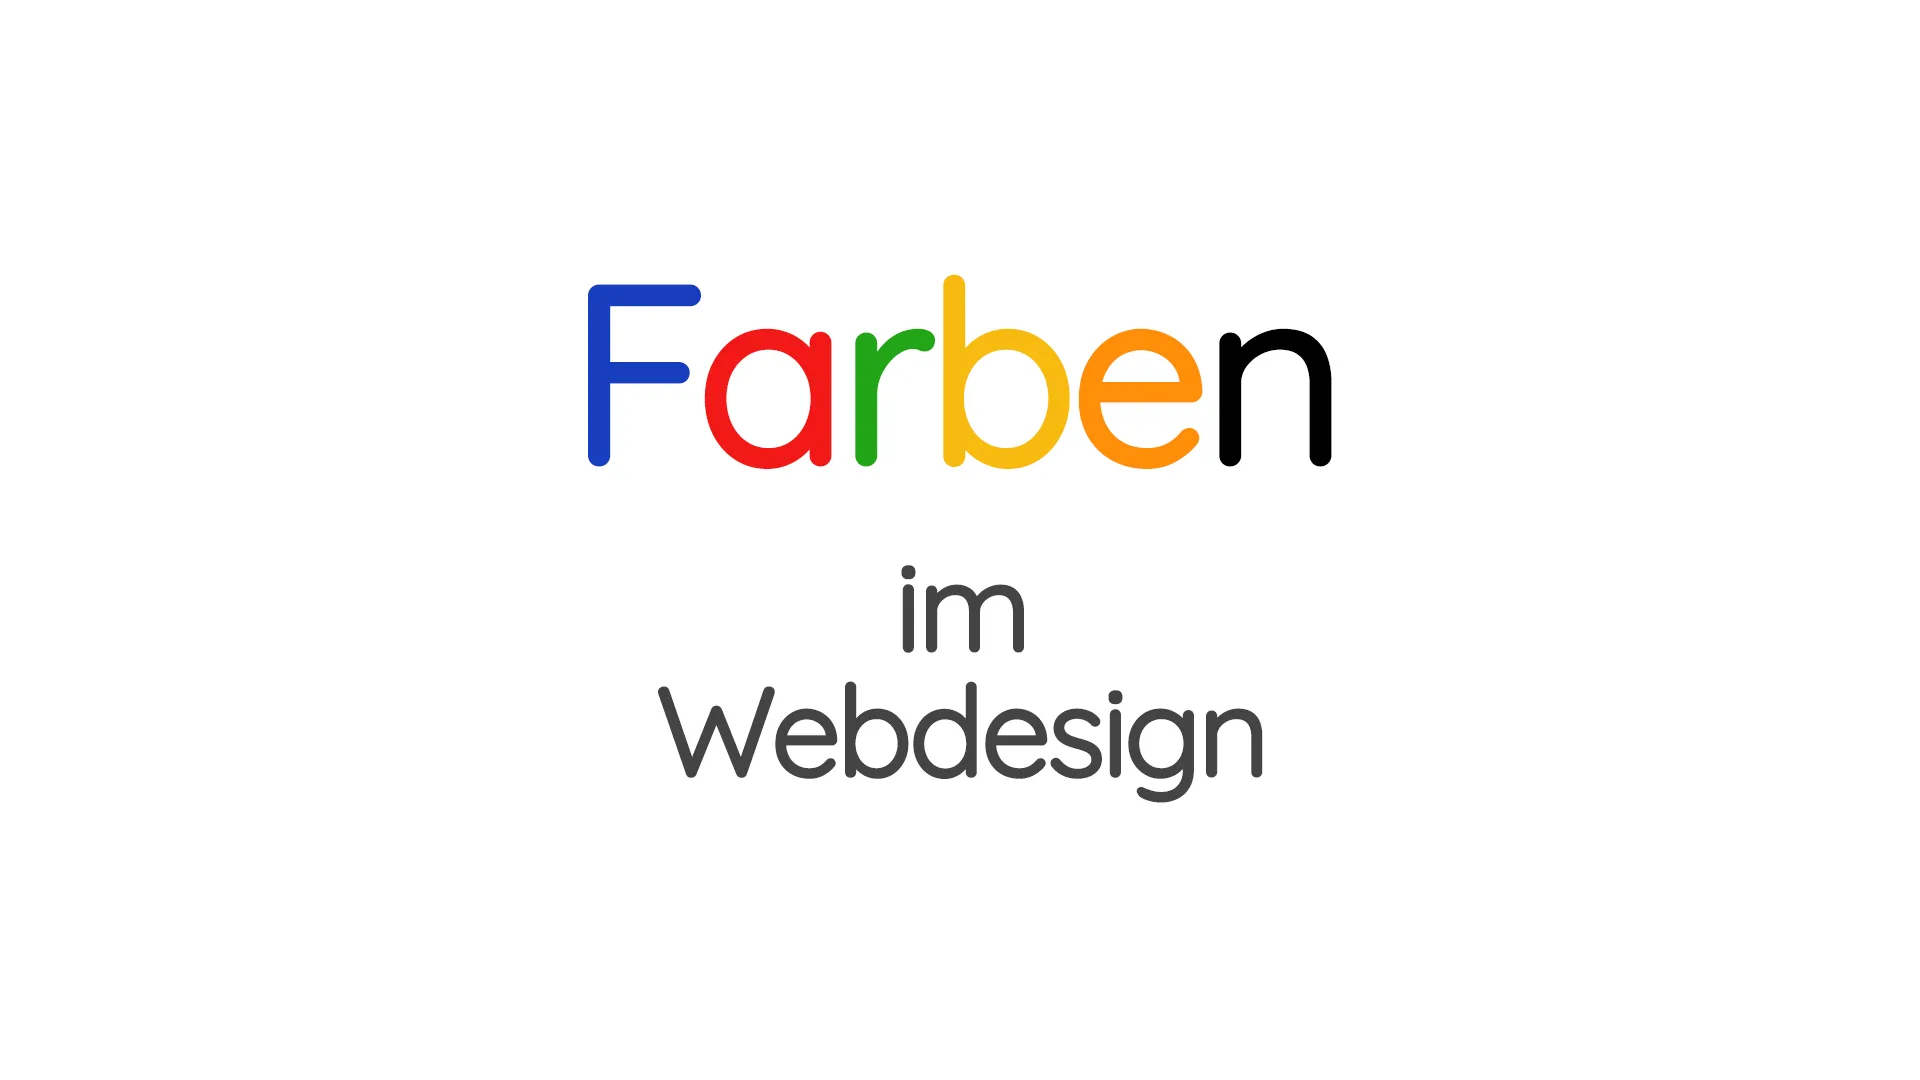 Das Wort "Farben" in unterschiedlichen Farben – Blau, Rot, Gelb, Grün und Orange – für jeden Buchstaben, darunter der Text "im Webdesign" in schwarz. Der Stil ist einfach und modern